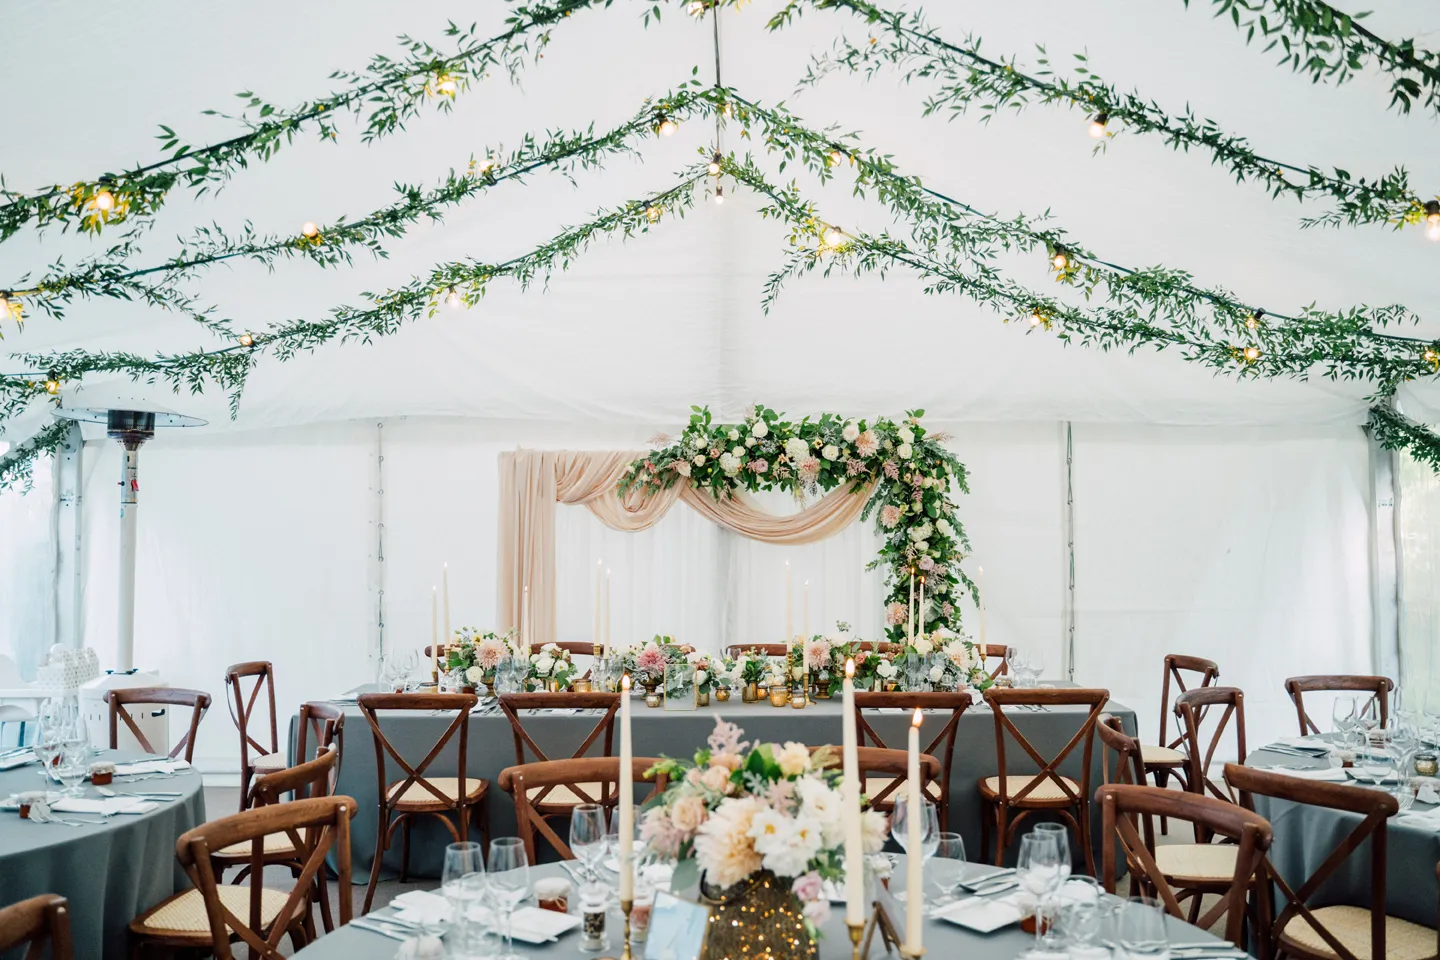 Romantik im Zelt: Hochzeitsträume wahr werden lassen durch Zeltvermietung